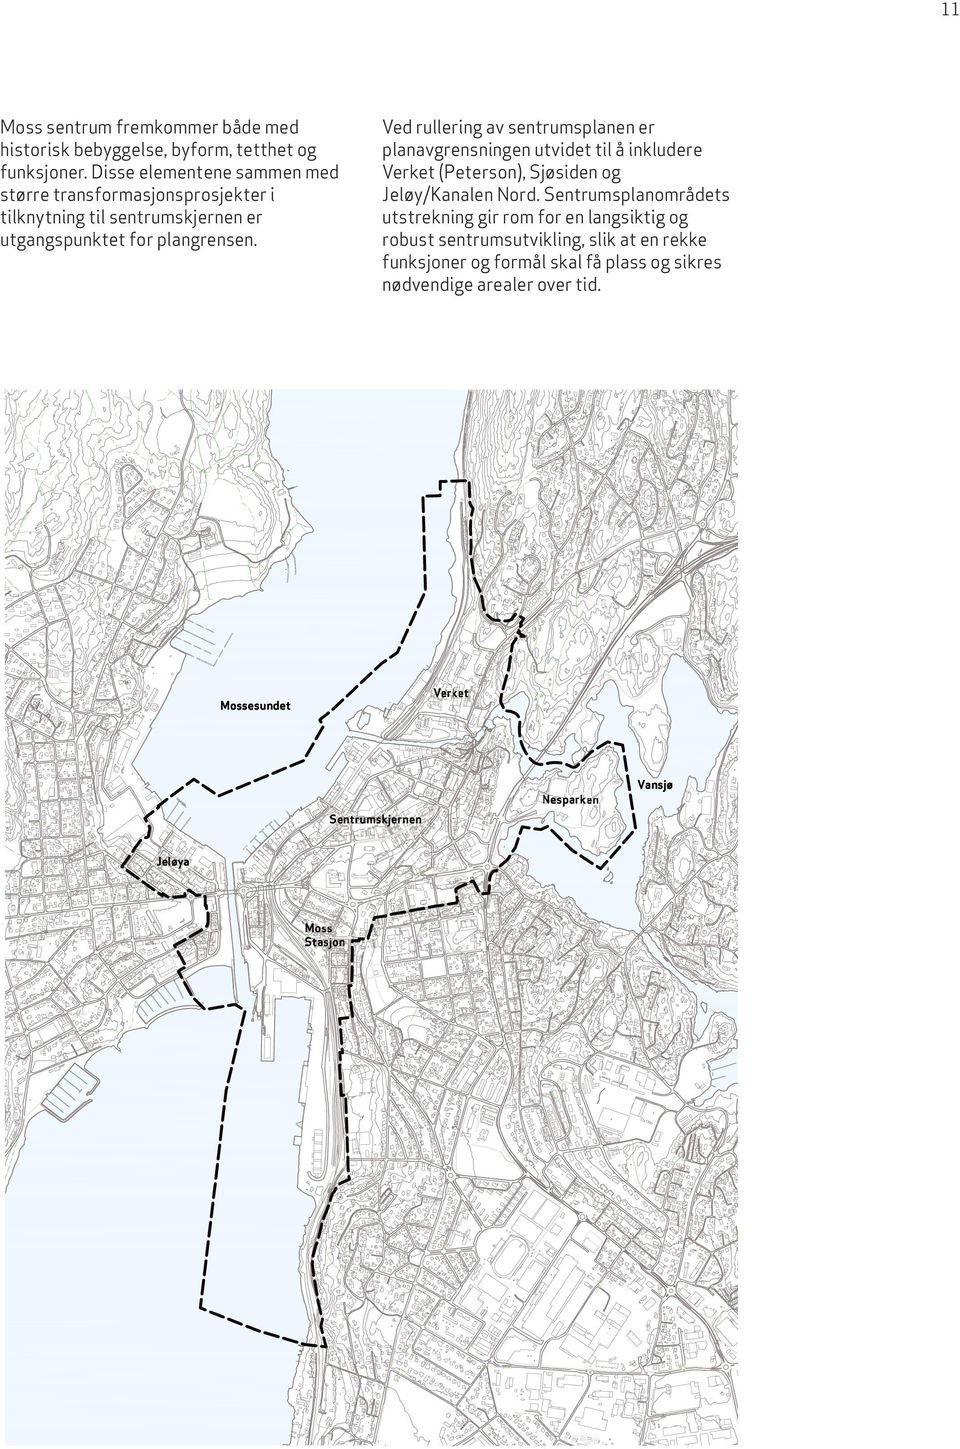 Ved rullering av sentrumsplanen er planavgrensningen utvidet til å inkludere Verket (Peterson), Sjøsiden og Jeløy/Kanalen Nord.